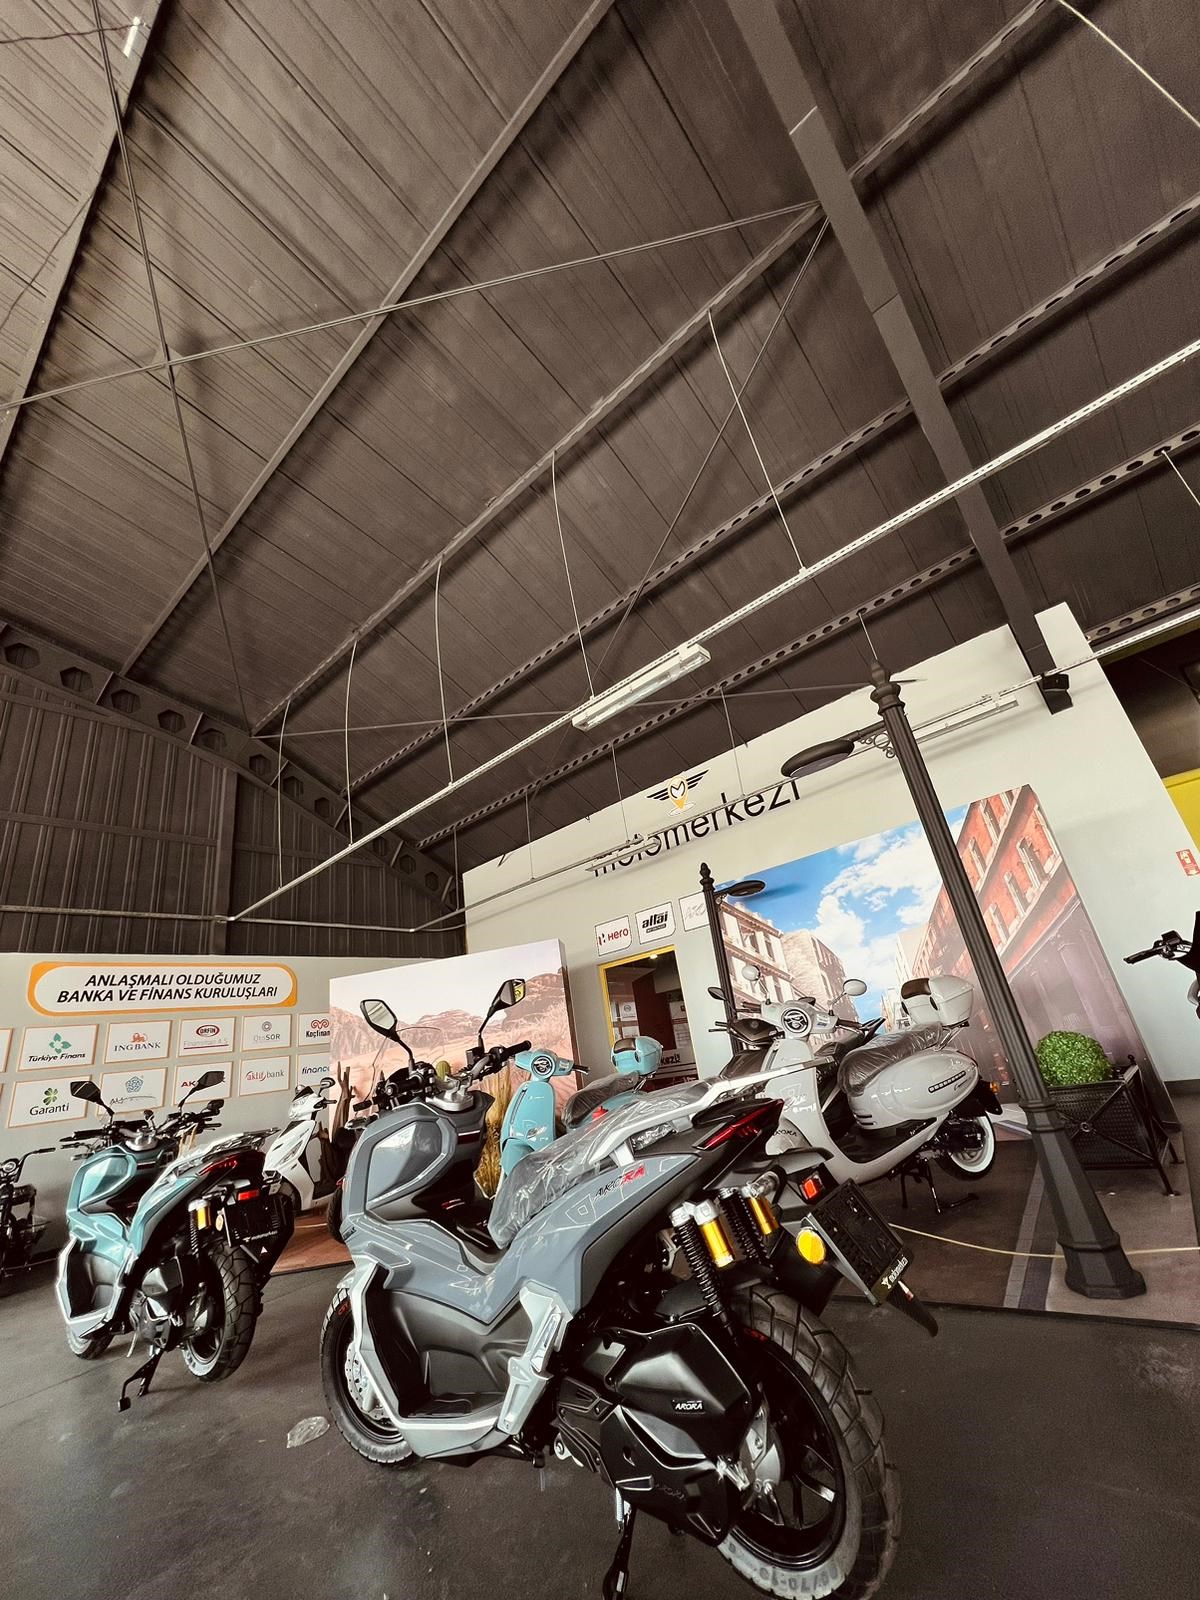 Motomerkezi, motosiklet satış ve satış sonrası hizmeti sağlayacak